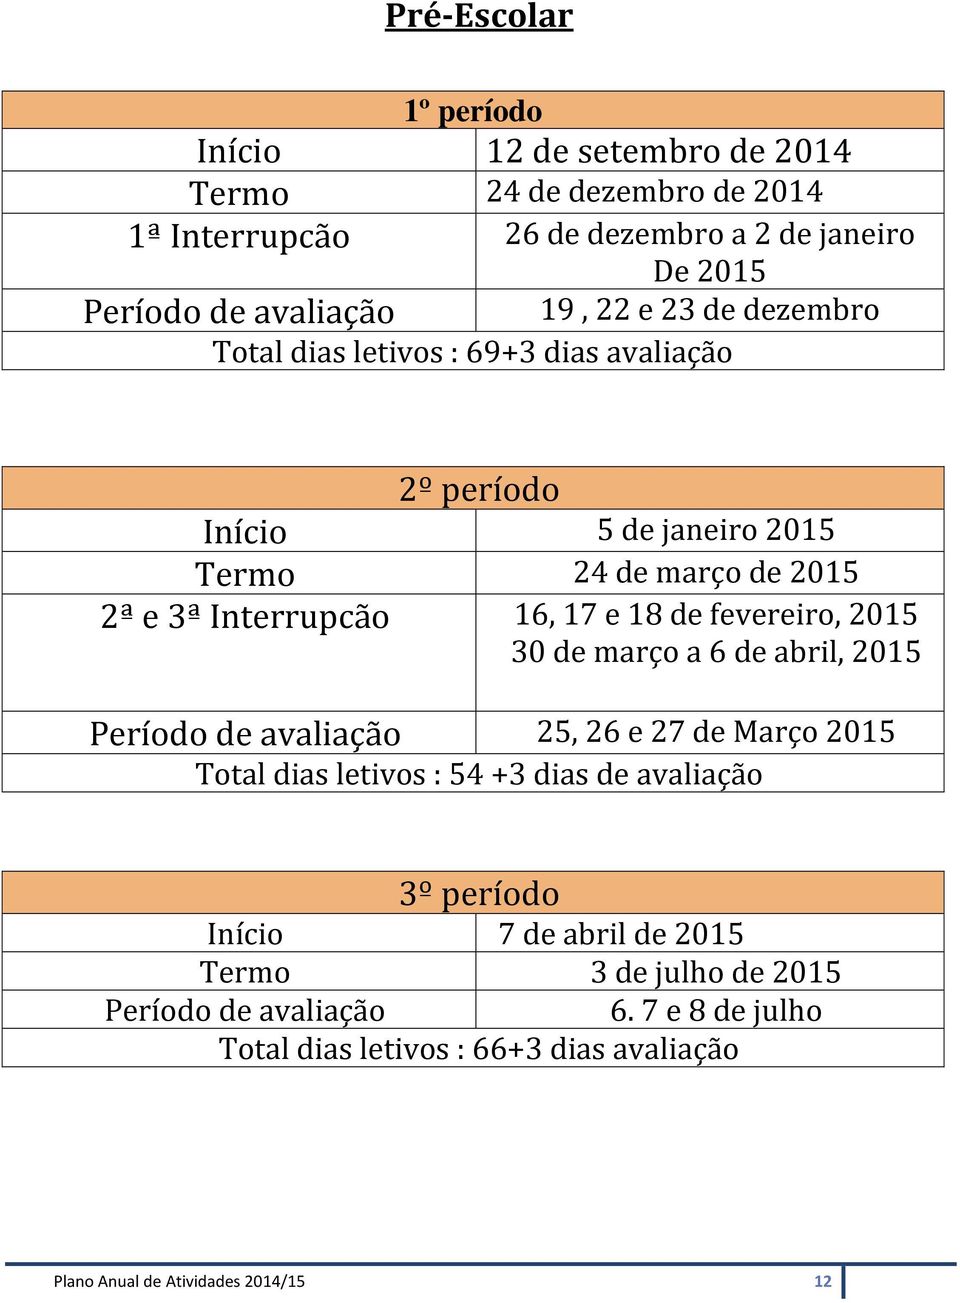 fevereiro, 2015 30 de março a 6 de abril, 2015 Período de avaliação 25, 26 e 27 de Março 2015 Total dias letivos : 54 +3 dias de avaliação 3º período Início 7